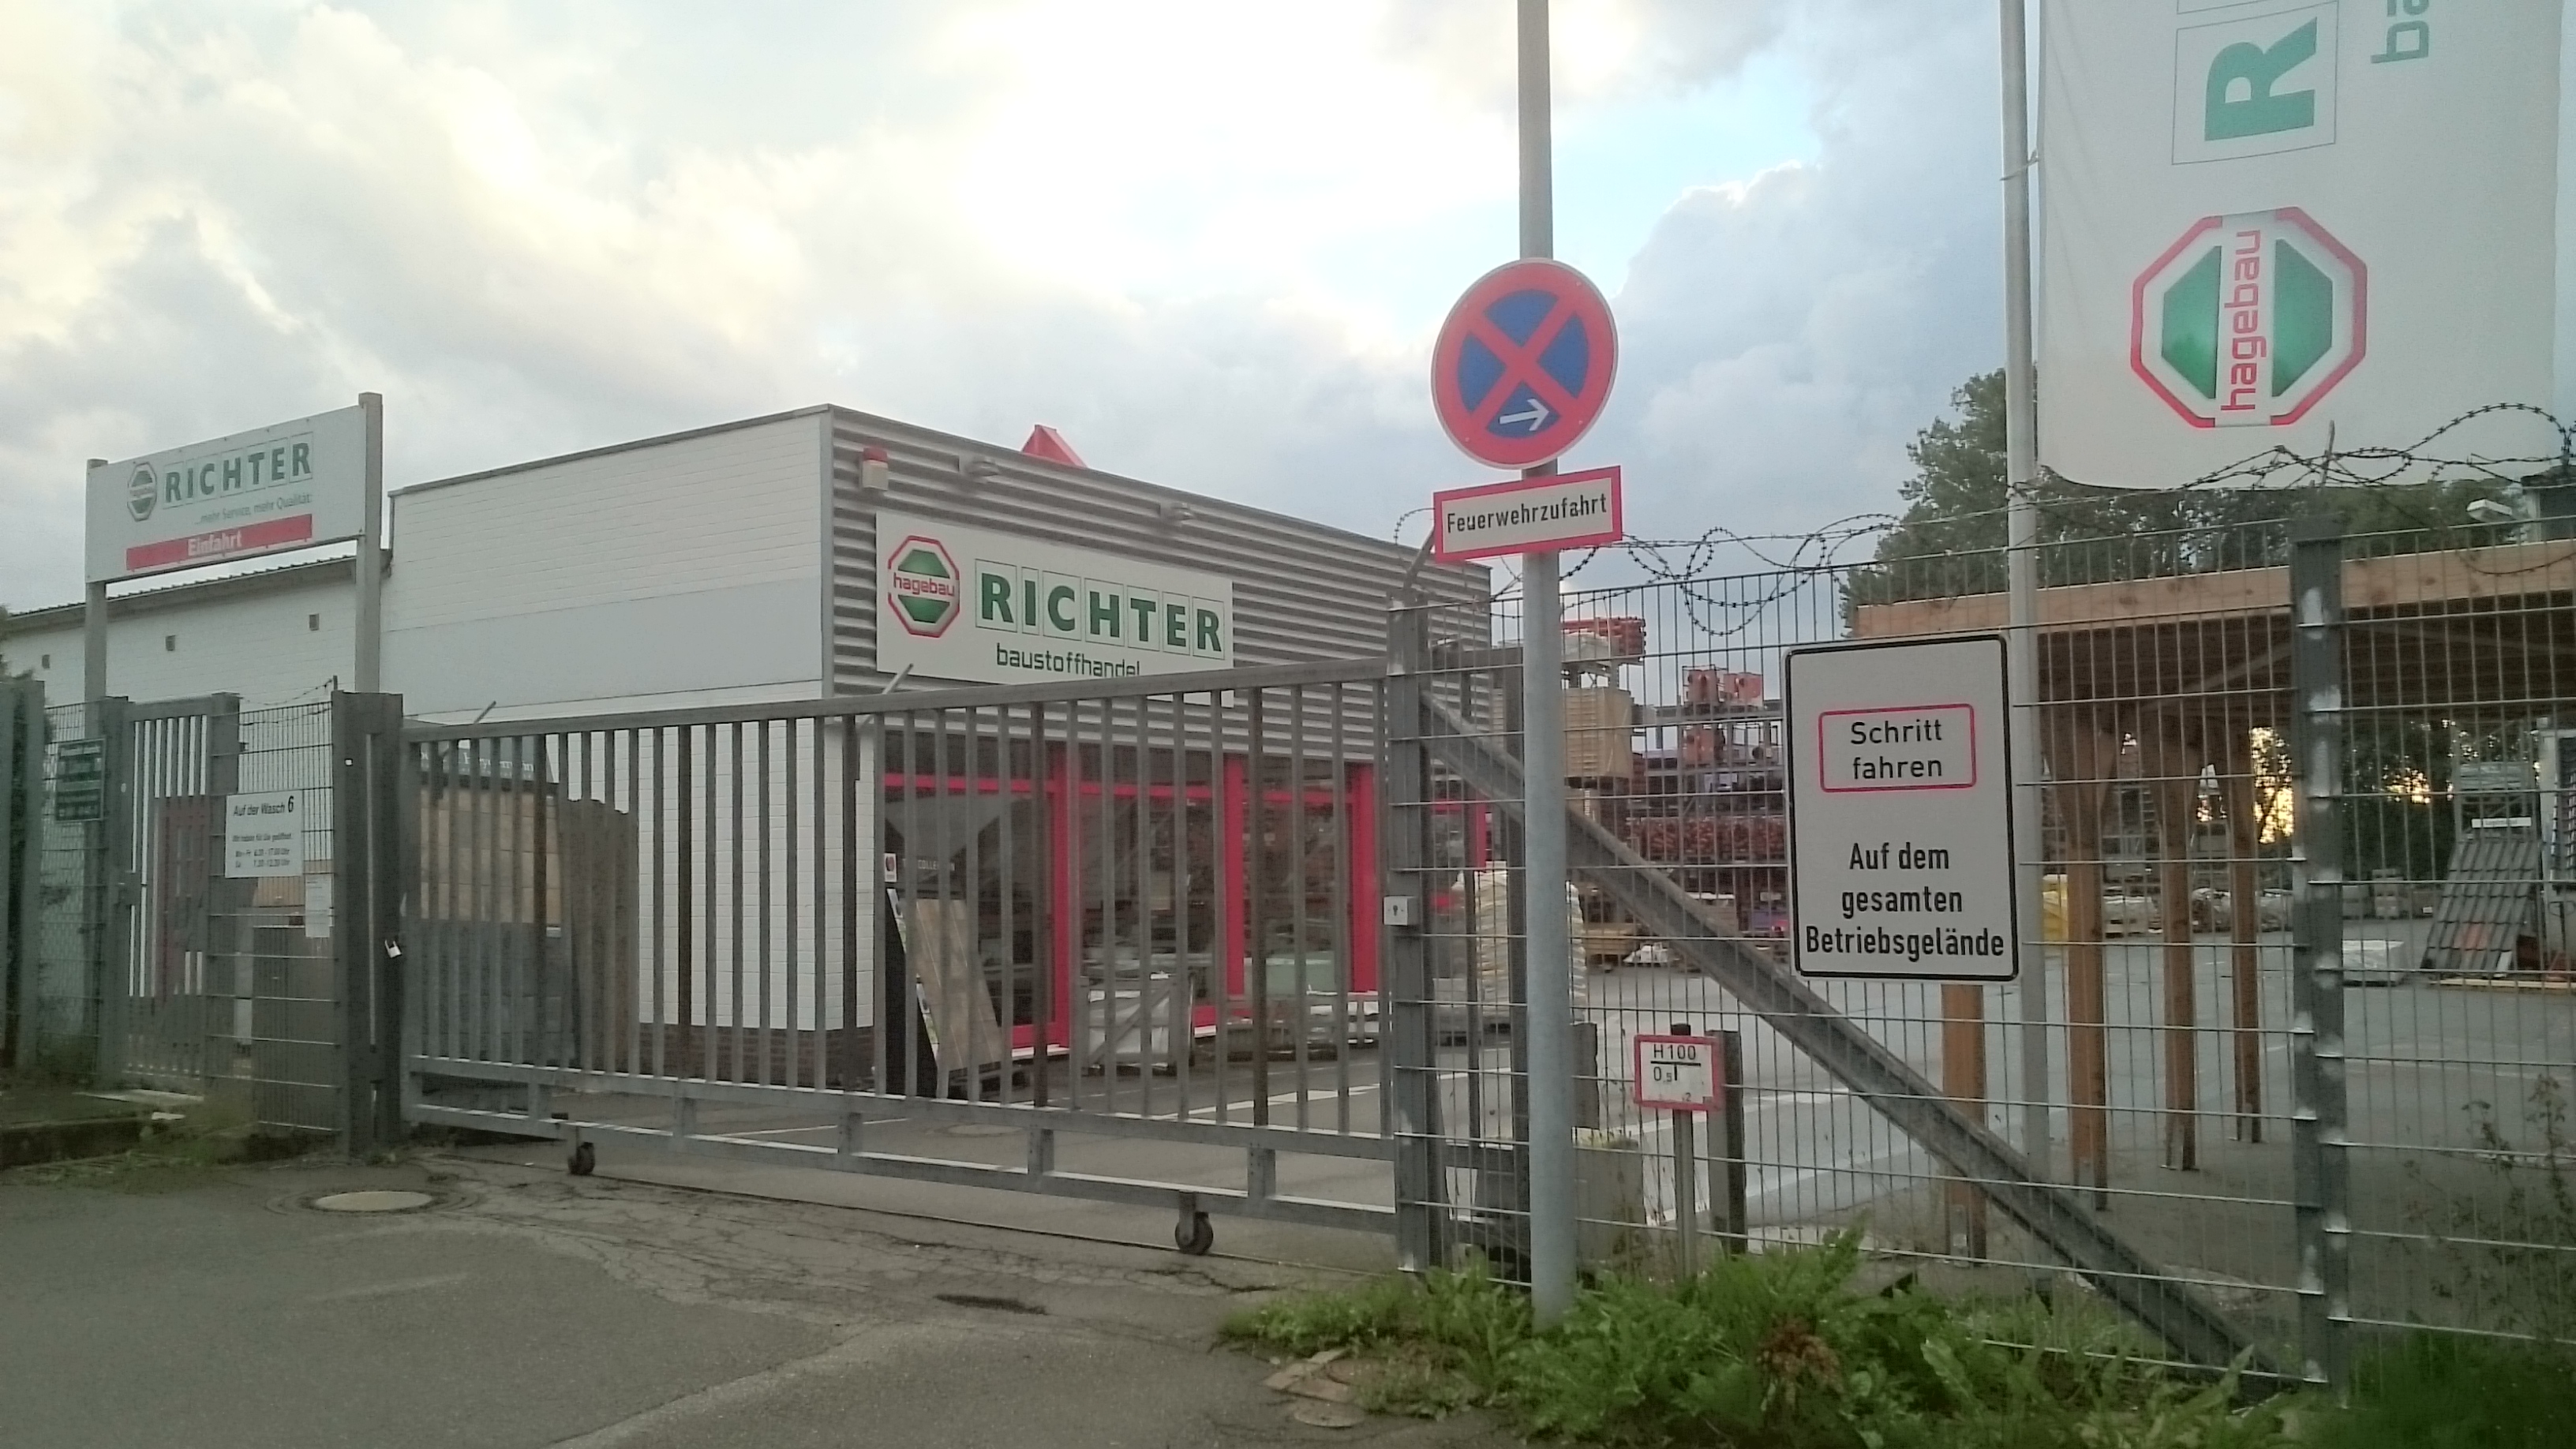 Bild 1 Richter Baustoffe GmbH & Co. KGaA in Bad Schwartau